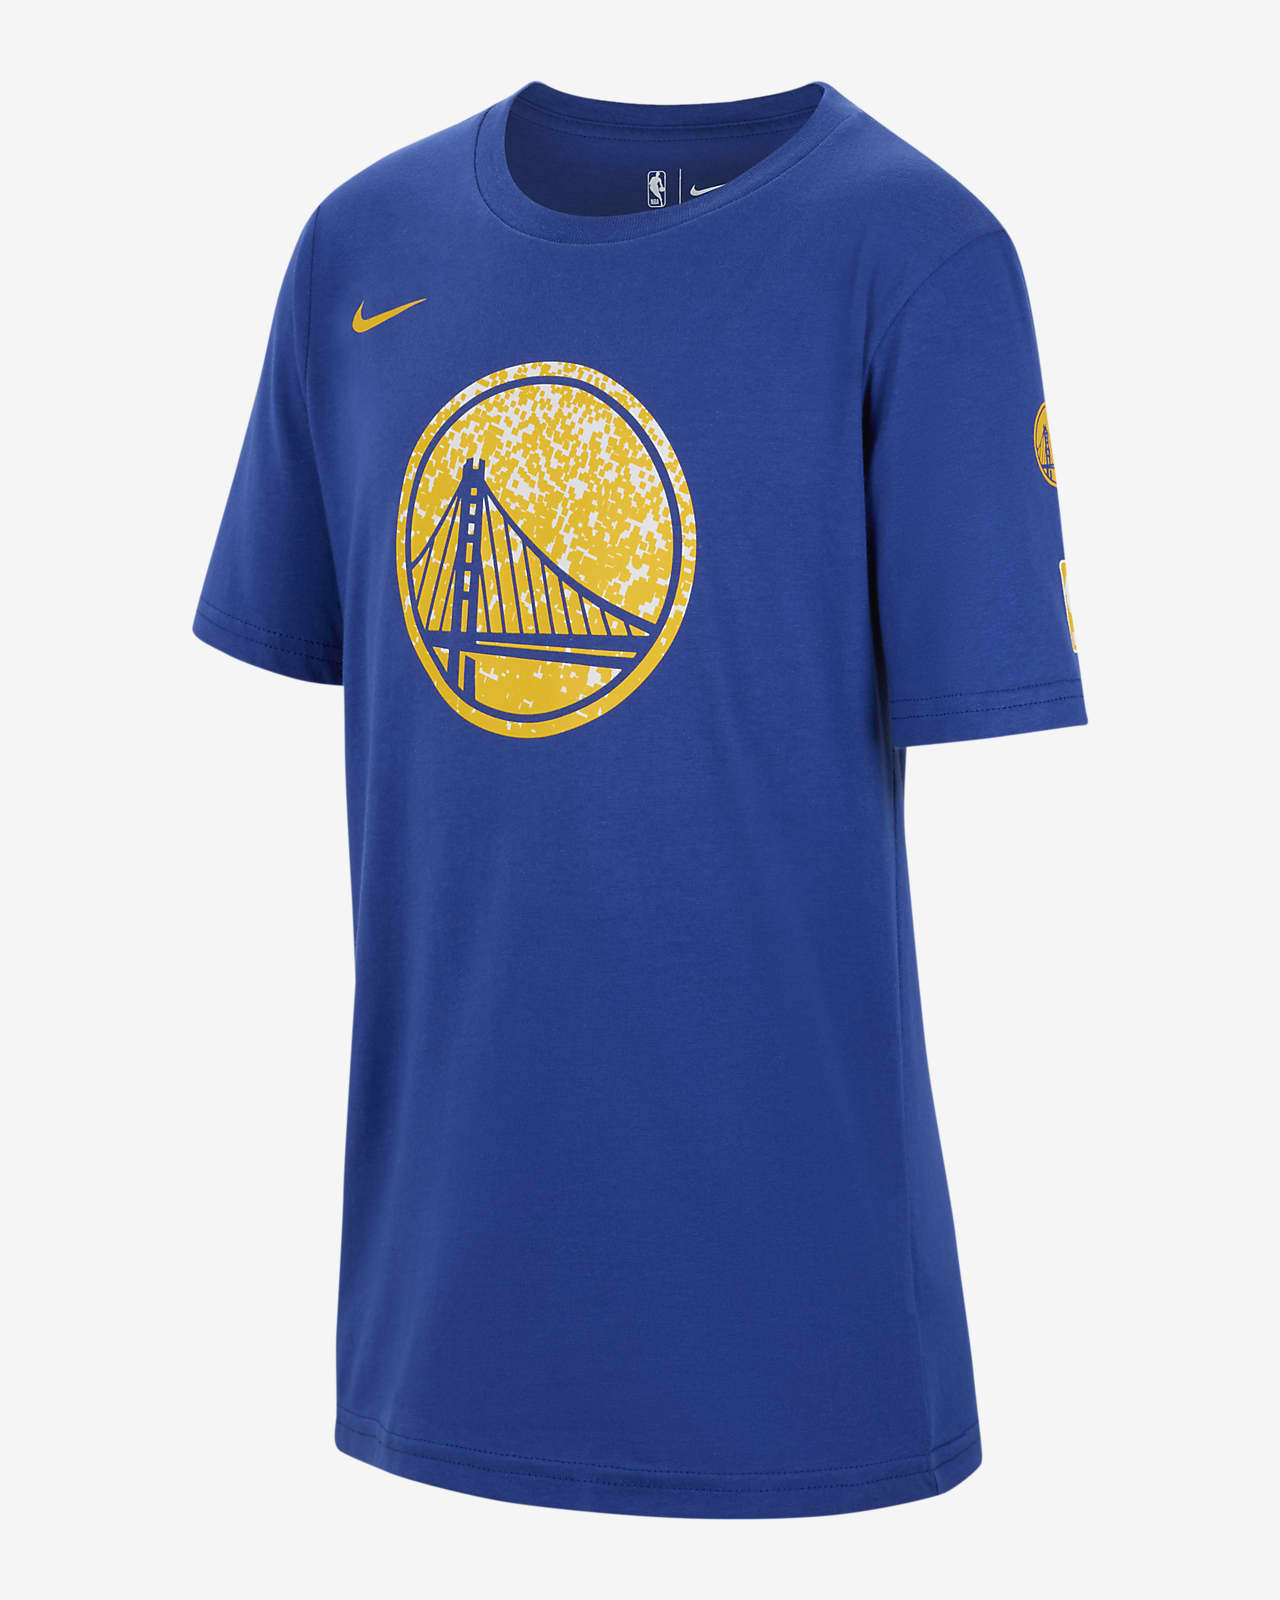 Golden State Warriors Essential Nike NBA-shirt voor jongens